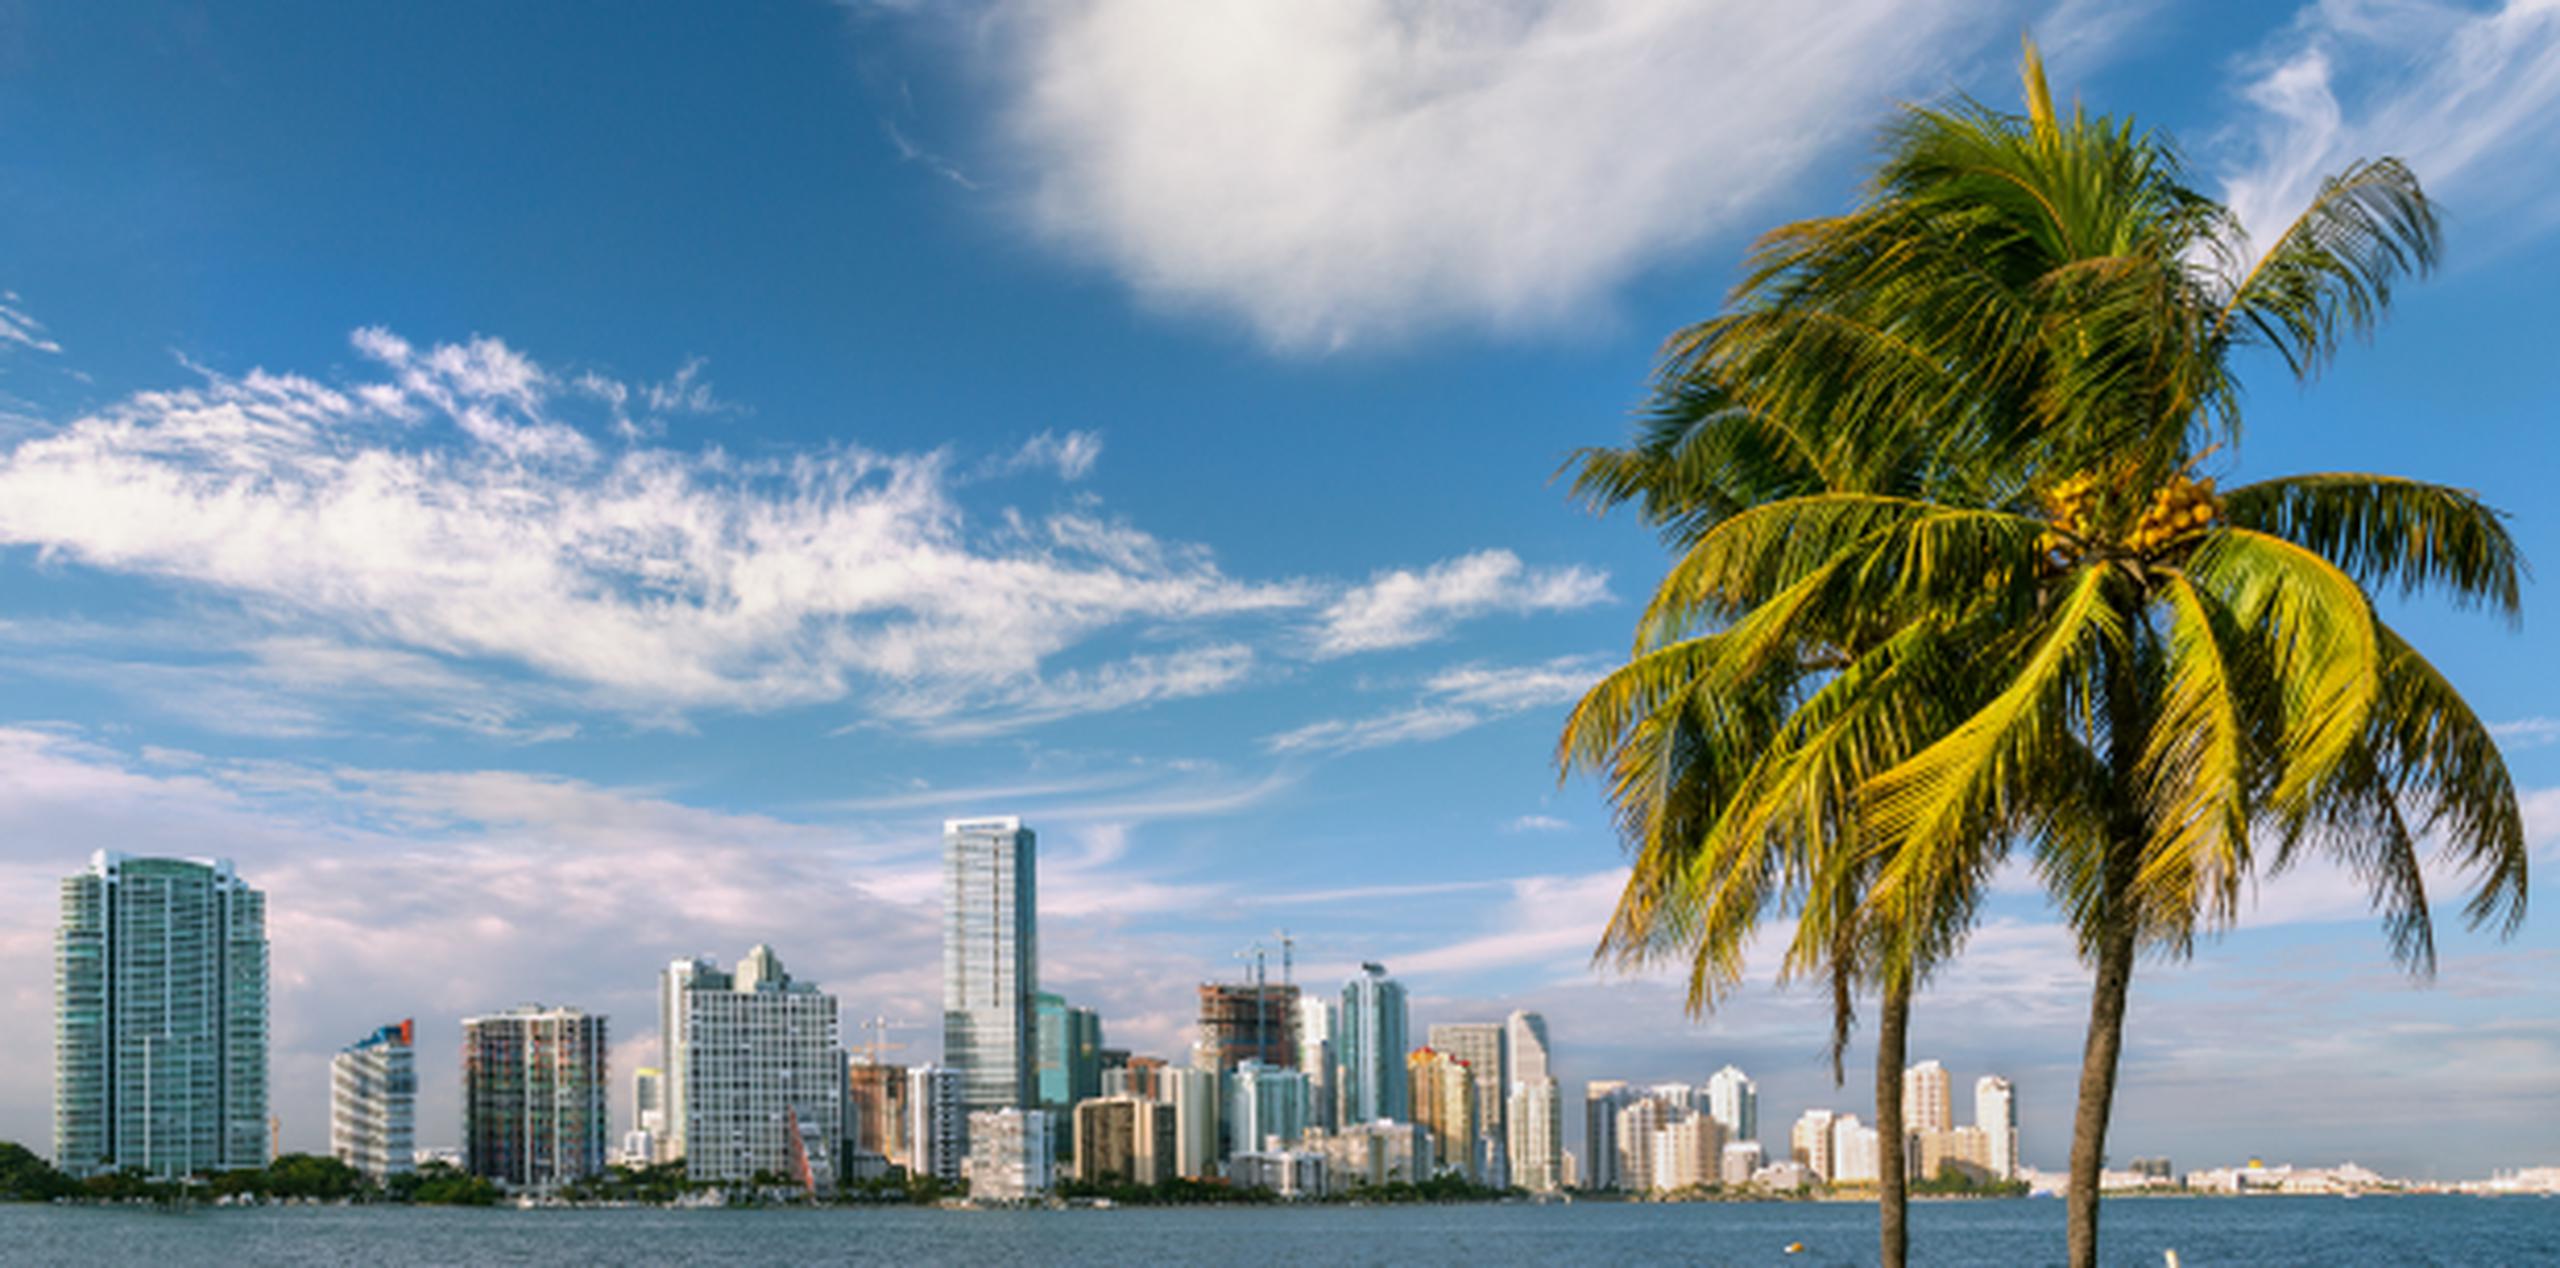 Pese a las bajas temperaturas, el cielo está despejado y el sol brilla durante el día en ciudades como Miami. (Shutterstock)